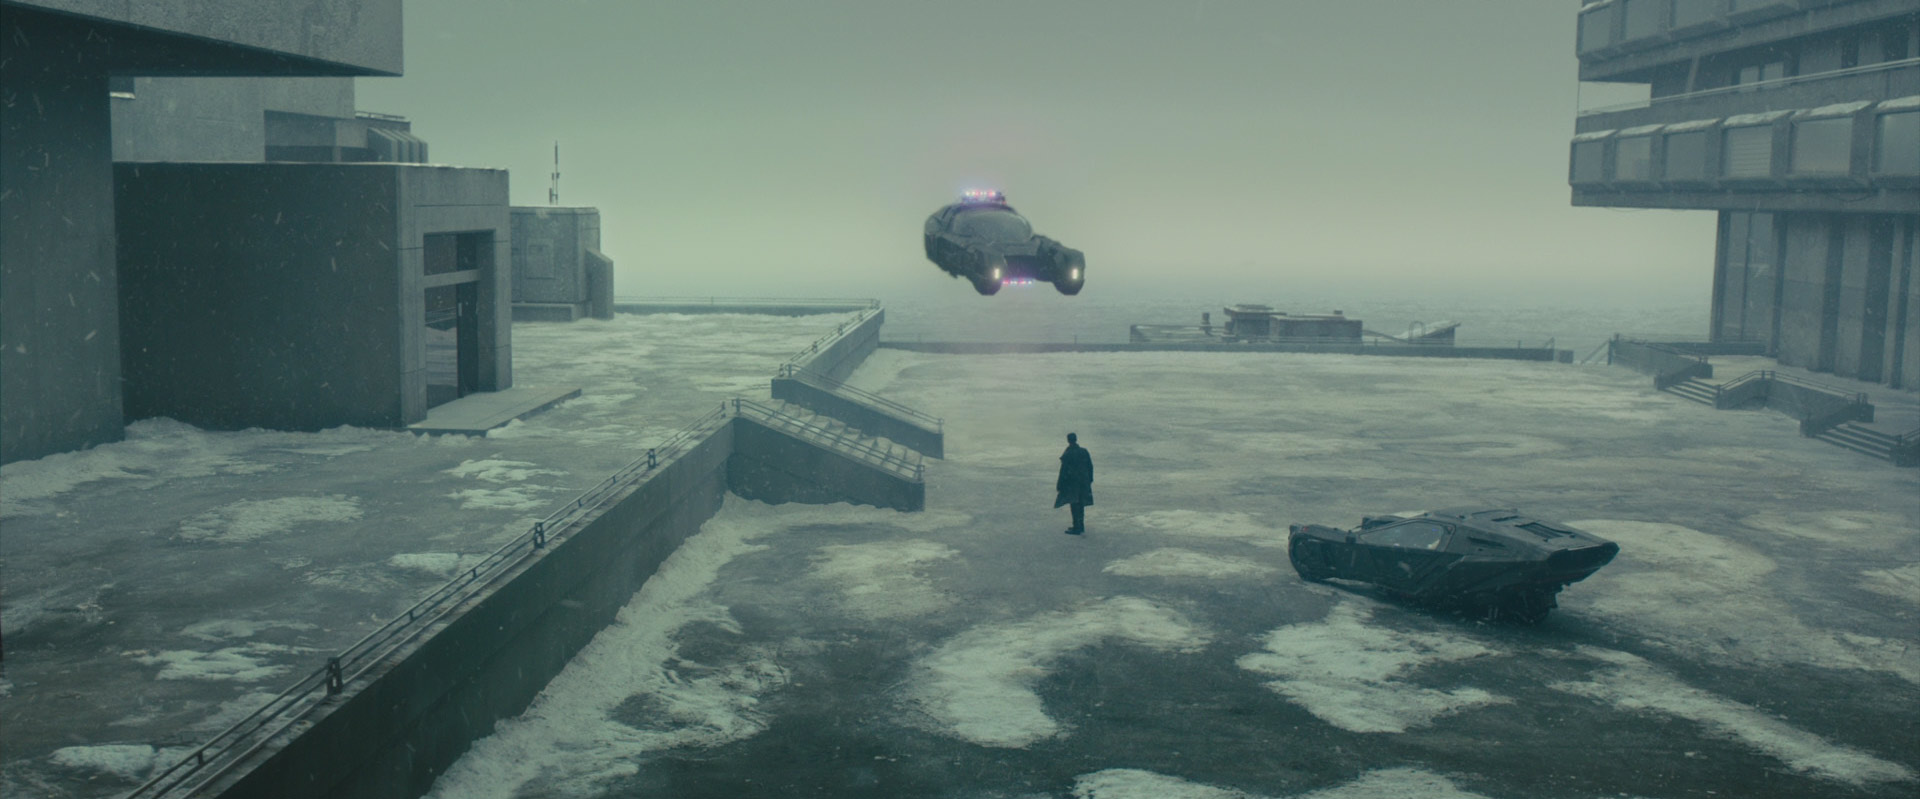 Blade Runner 2049: Das Bild zeigt einen Mann, der vor einem großen Gebäude steht. Um ihn herum ist alles vereist und verschneit. Hinter ihm steht ein futuristisches Fahrzeug. Vor ihm ist ein Polizeiauto, das ebenfalls futuristisch ist und in der Luft schwebt